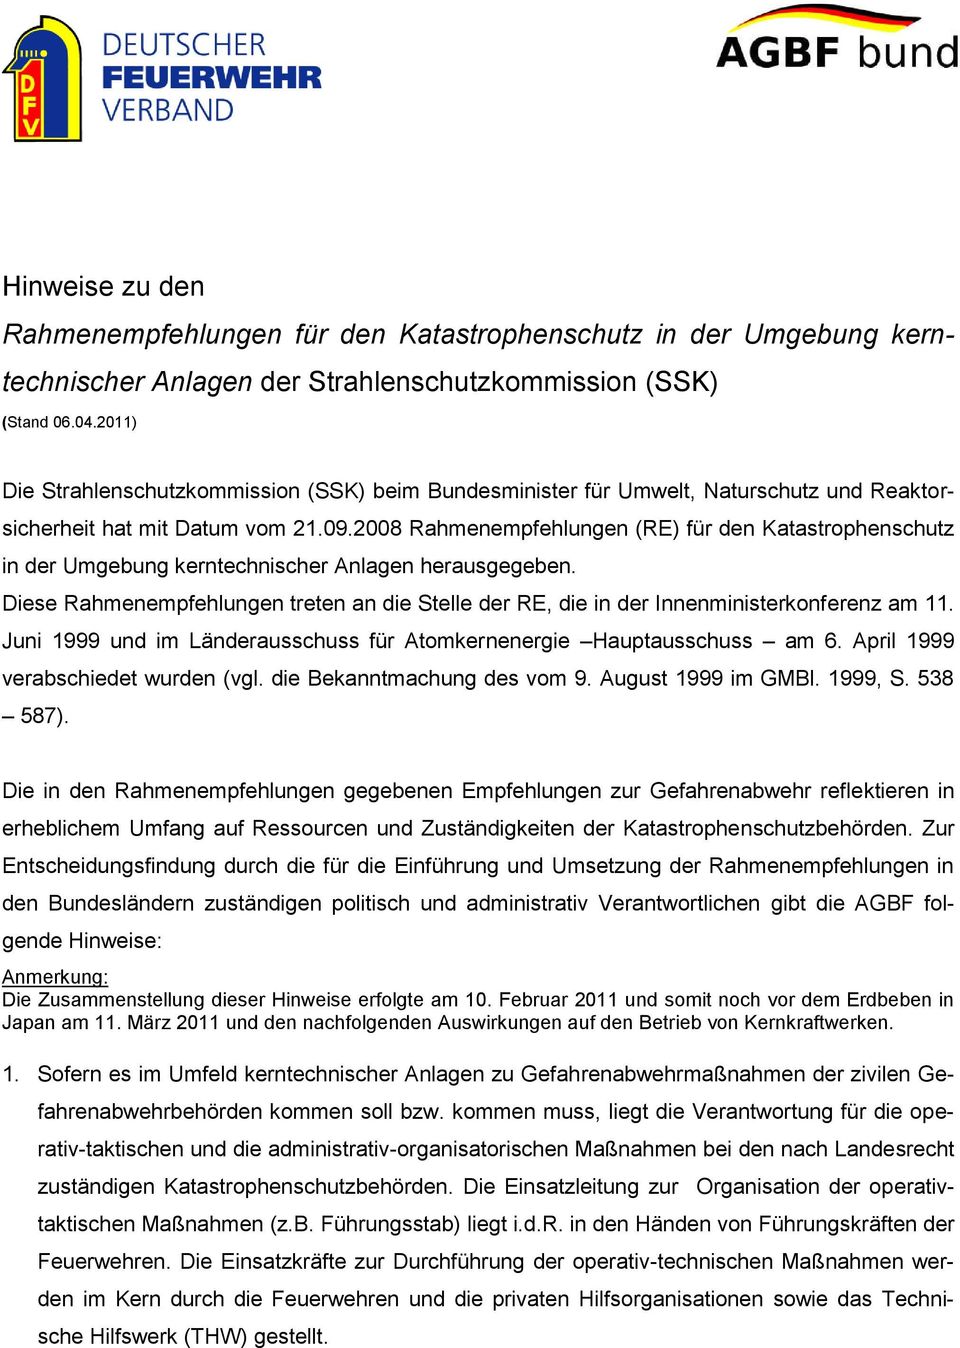 2008 Rahmenempfehlungen (RE) für den Katastrophenschutz in der Umgebung kerntechnischer Anlagen herausgegeben.